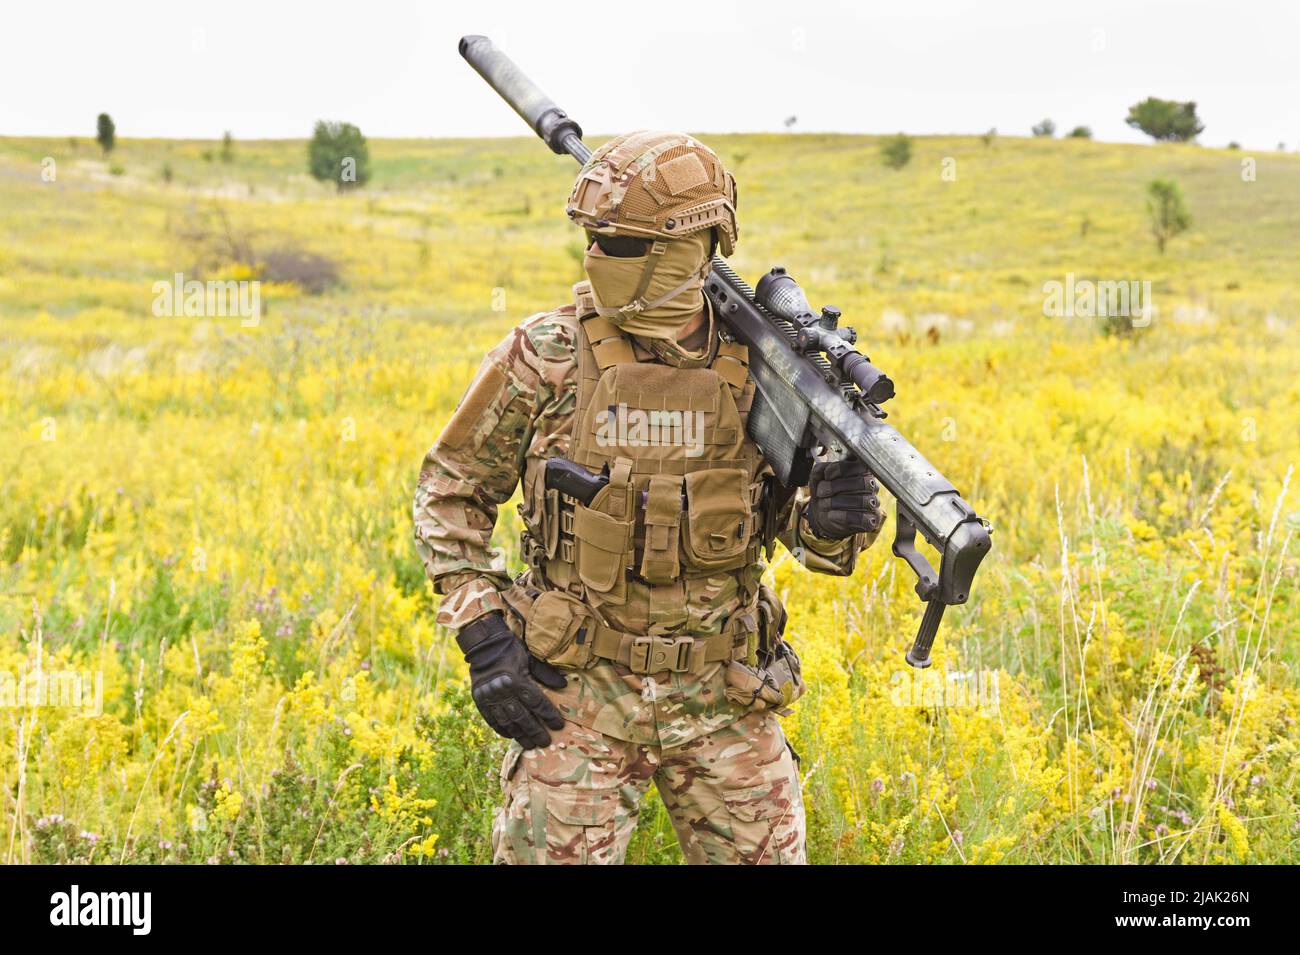 Soldat dans un uniforme militaire spécial, portant un fusil de sniper dans un champ. Banque D'Images